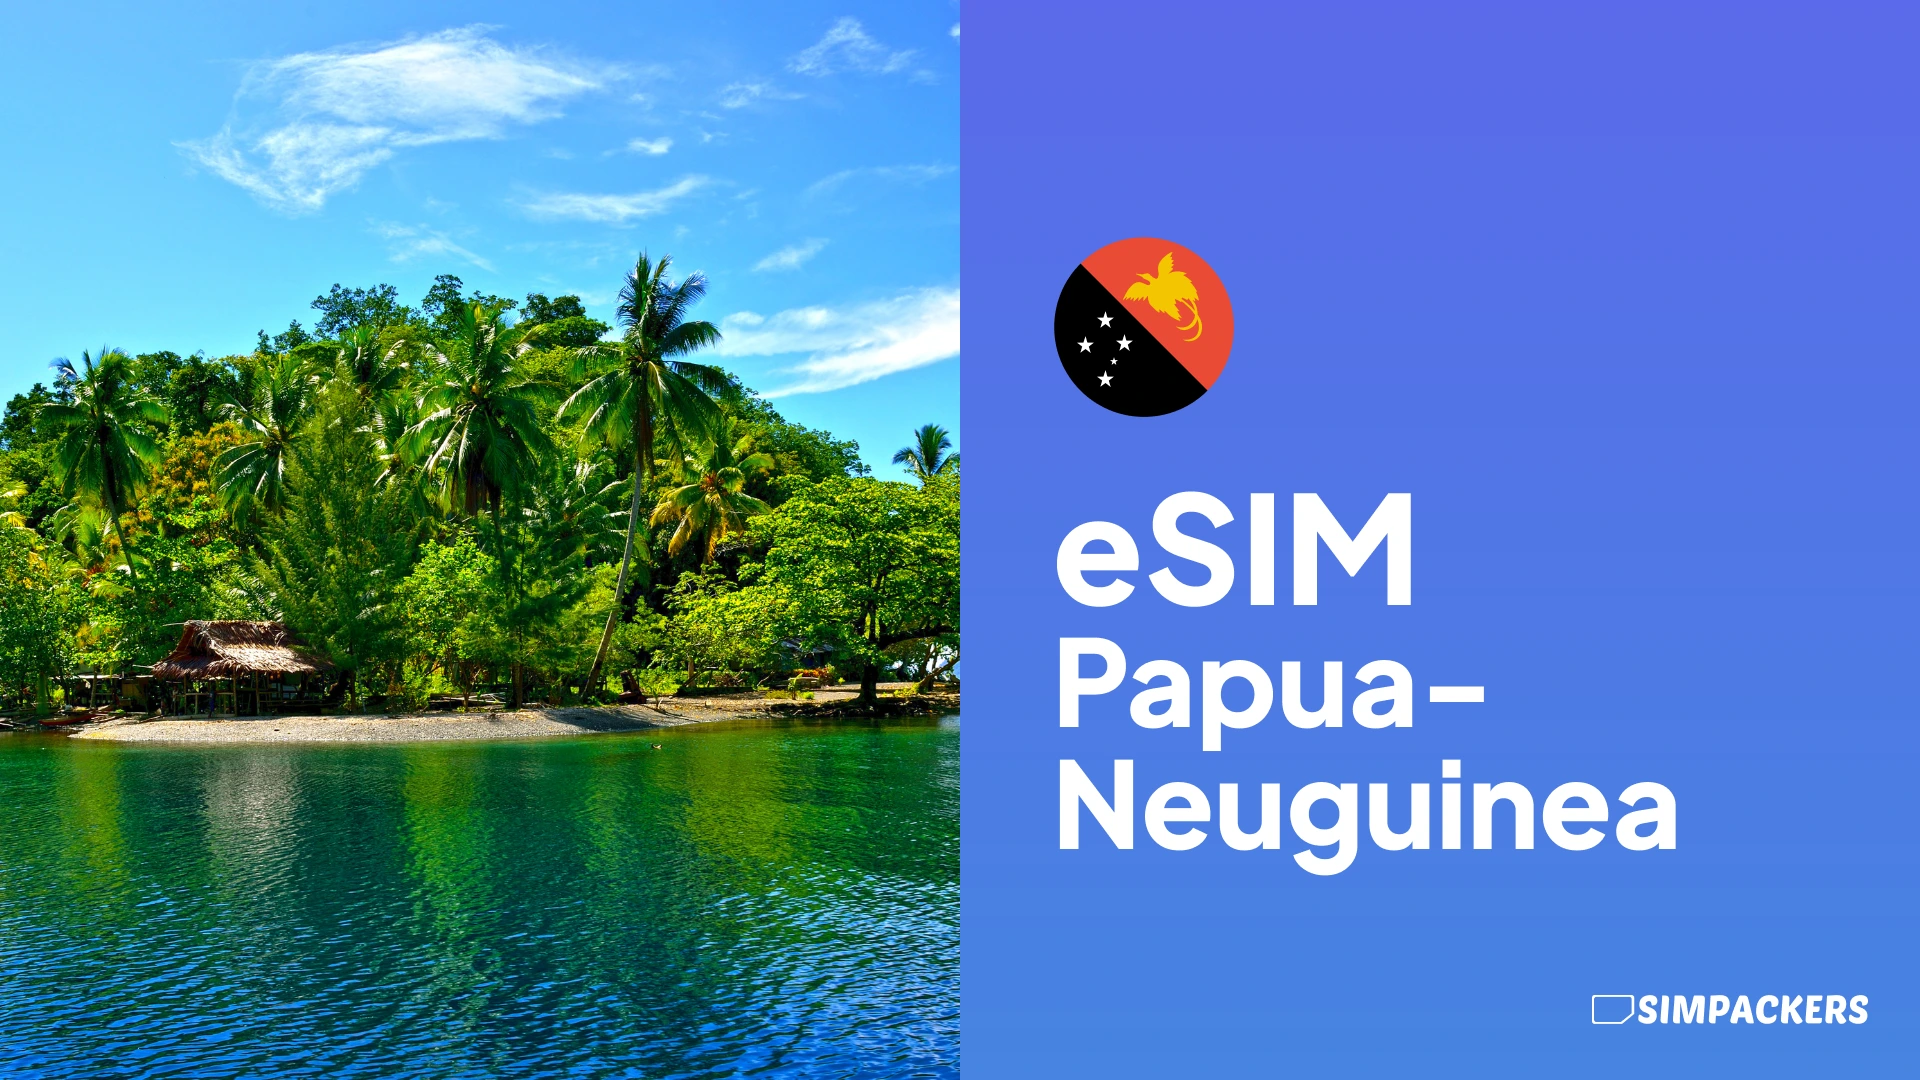 DE/FEATURED_IMAGES/esim-papua-neuguinea.webp